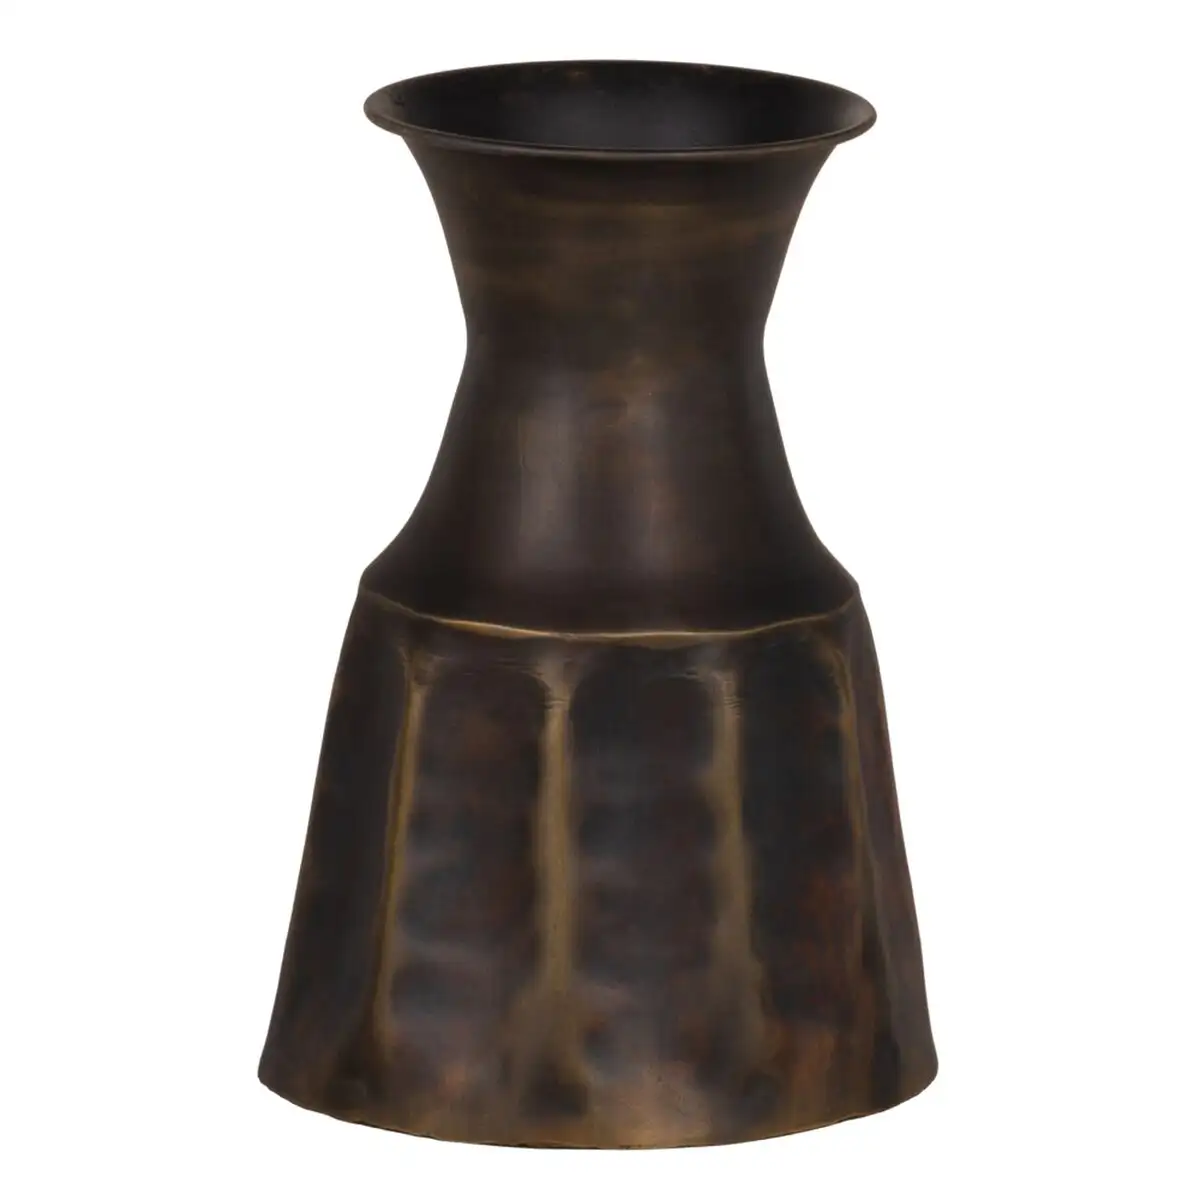 Vase dore metal 15 x 15 x 22 cm_5099. DIAYTAR SENEGAL - Où Choisir est un Plaisir Responsable. Explorez notre boutique en ligne et adoptez des produits qui reflètent notre engagement envers la durabilité.